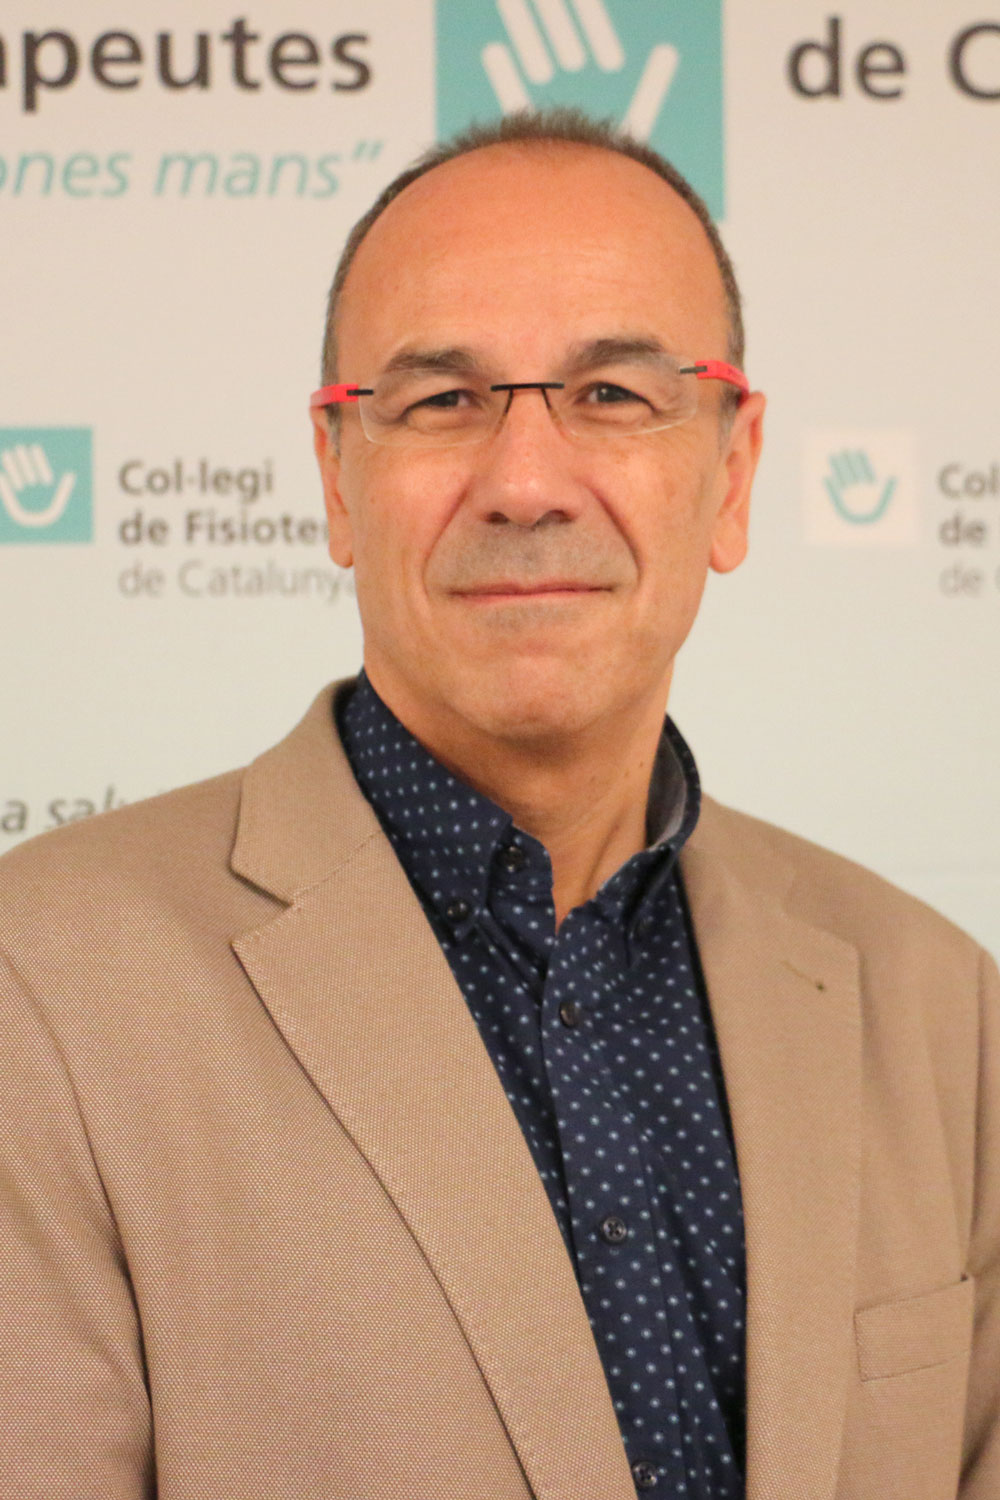 Ramon Aiguadé